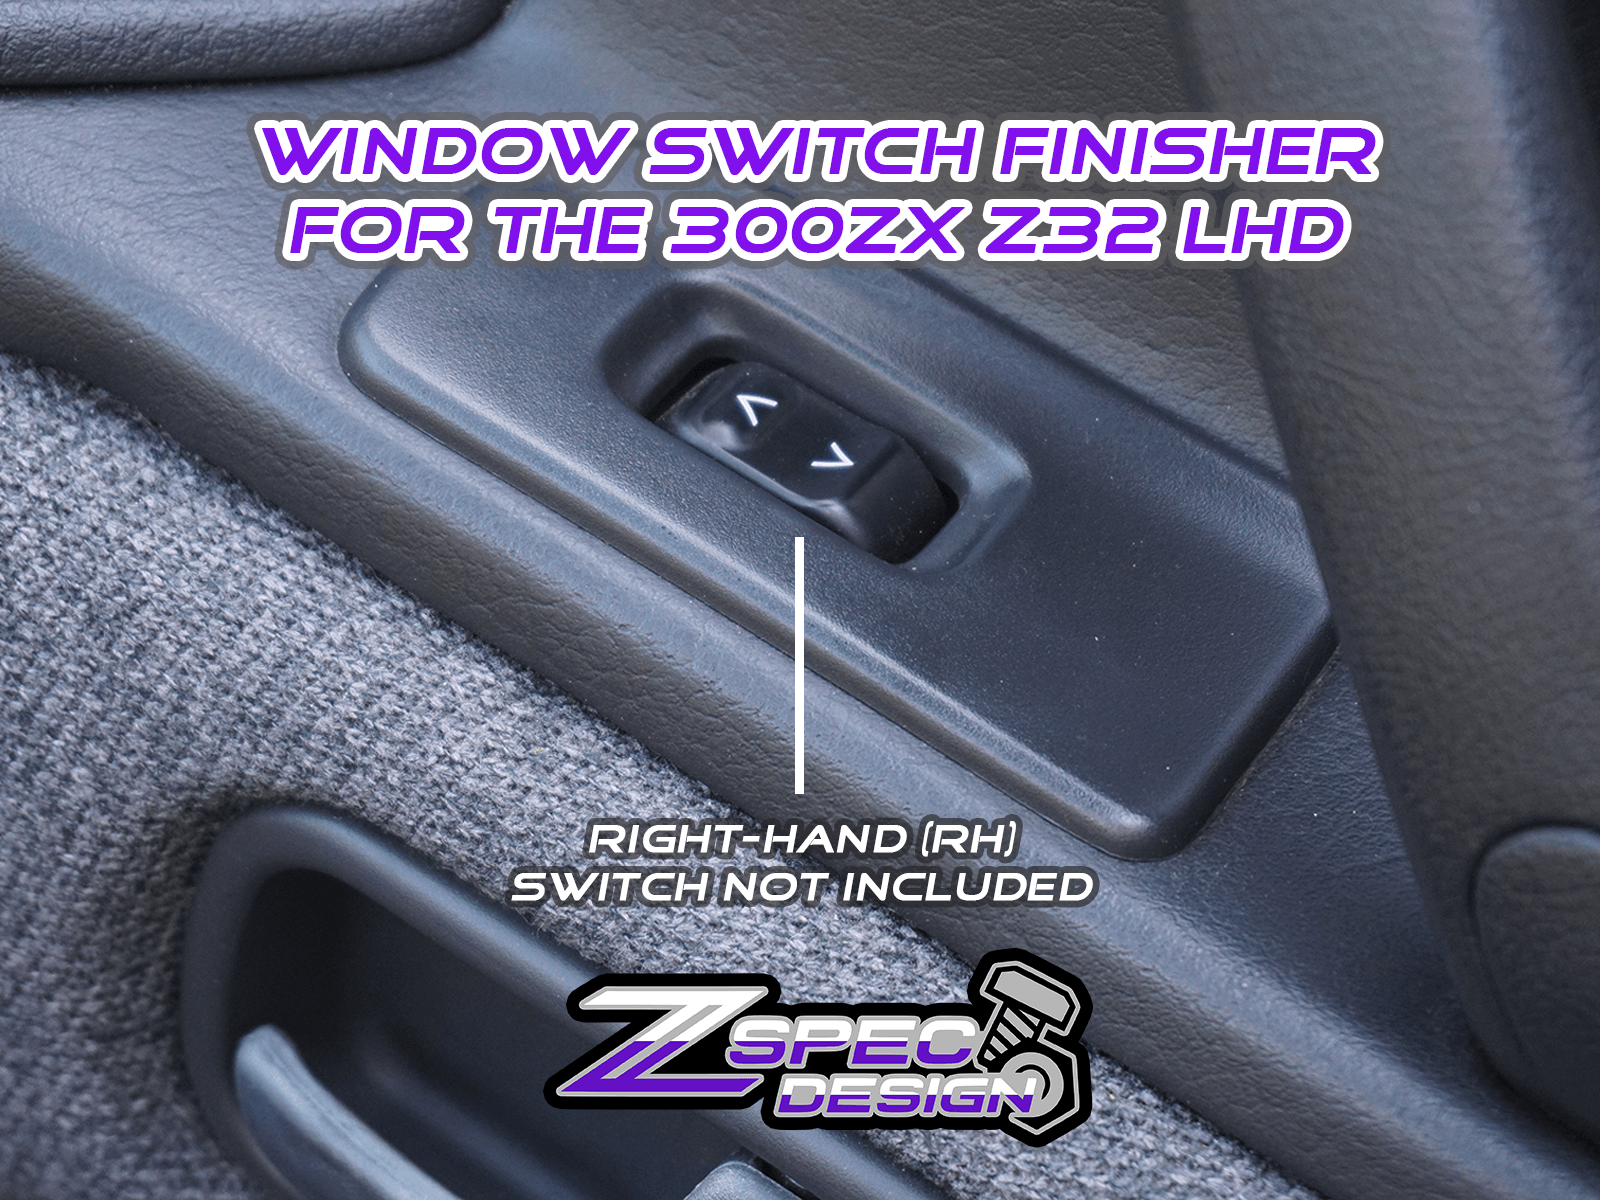 ** PRE-BUY** ZSPEC 300zx Z32 Window Switch Finisher Pair - RH & LH - for LHD Models